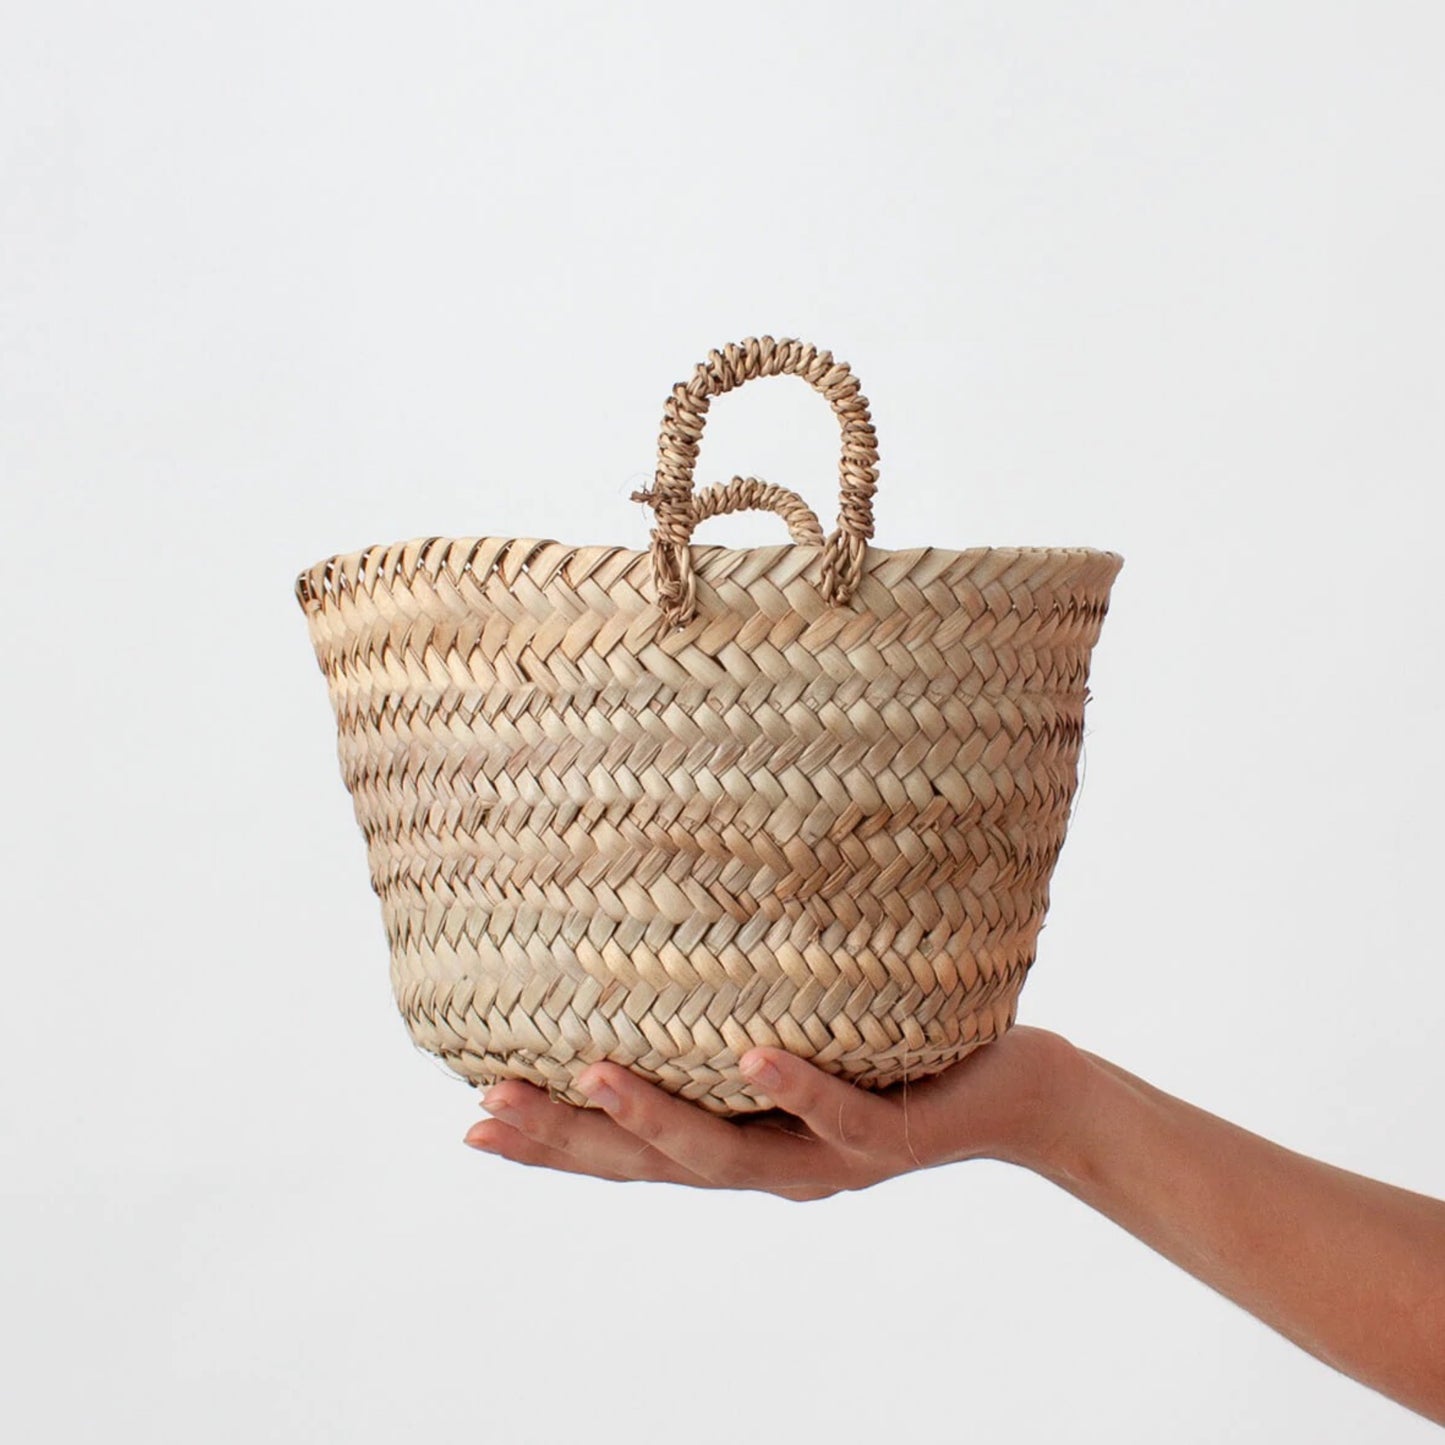 Tiny basket